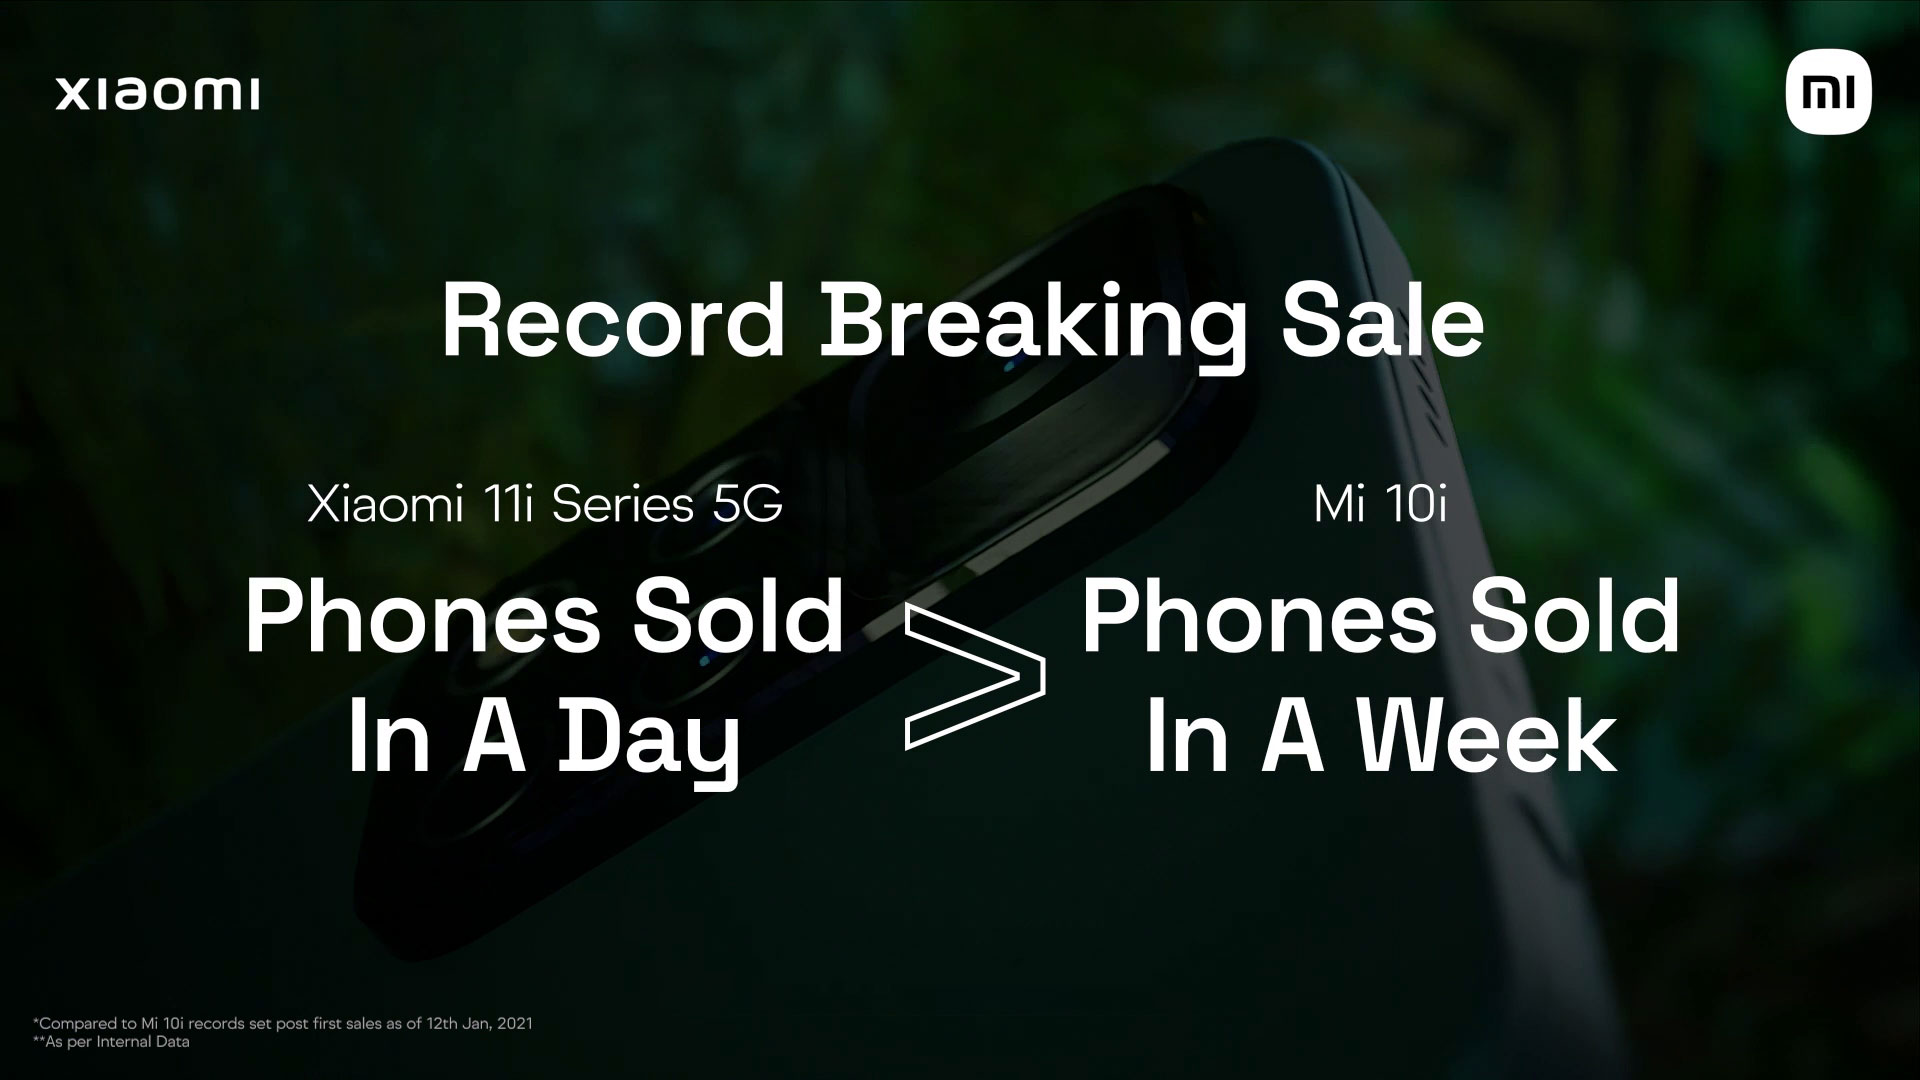 Gli smartphone Xiaomi 11i stabiliscono un nuovo record: più modelli venduti in un giorno rispetto a Xiaomi Mi 10i in una settimana